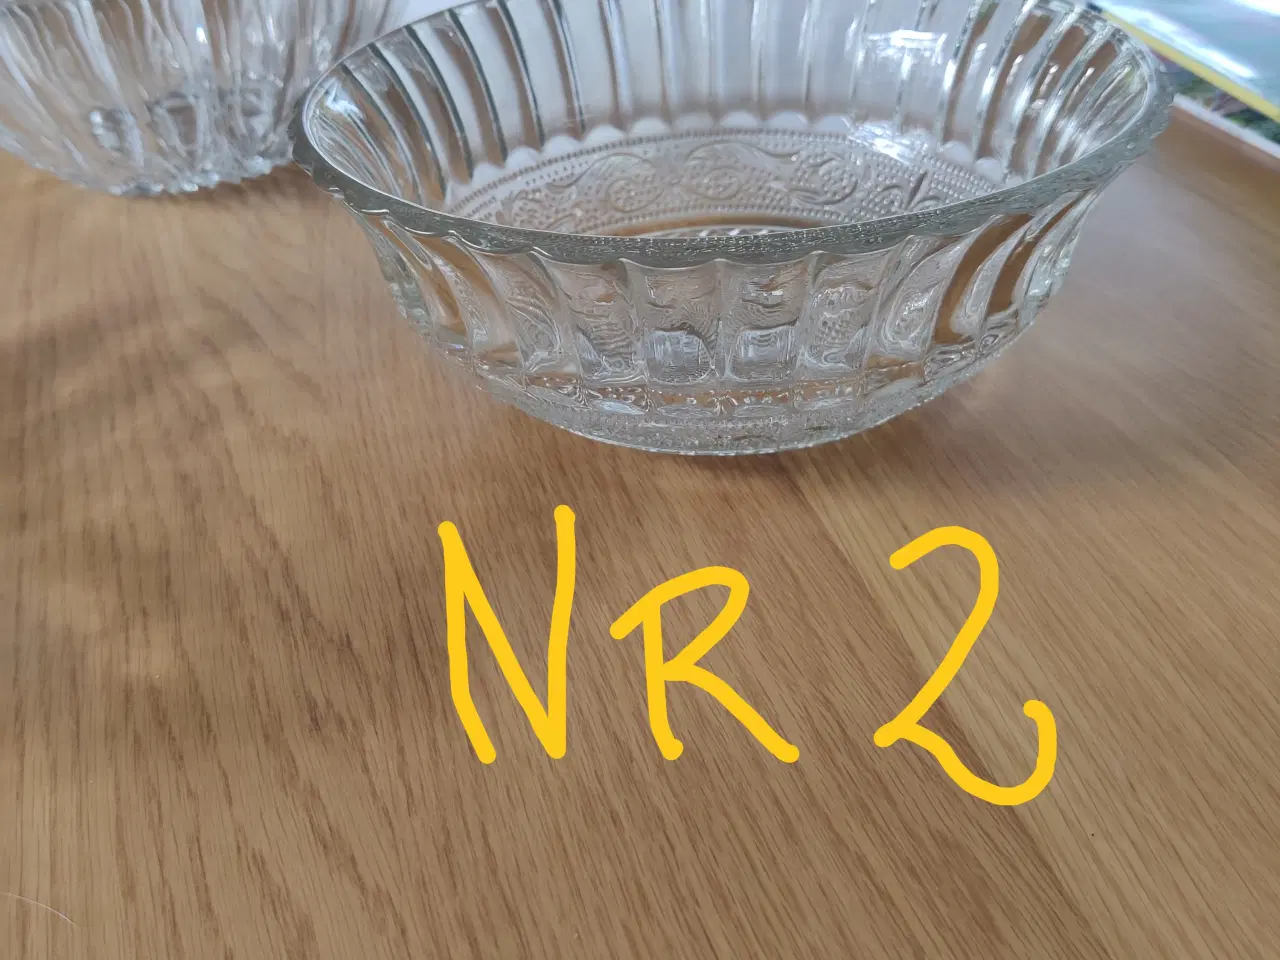 Billede 5 - 3 glas skåle mellem str.Ca 20-25 cm brede 35 kr